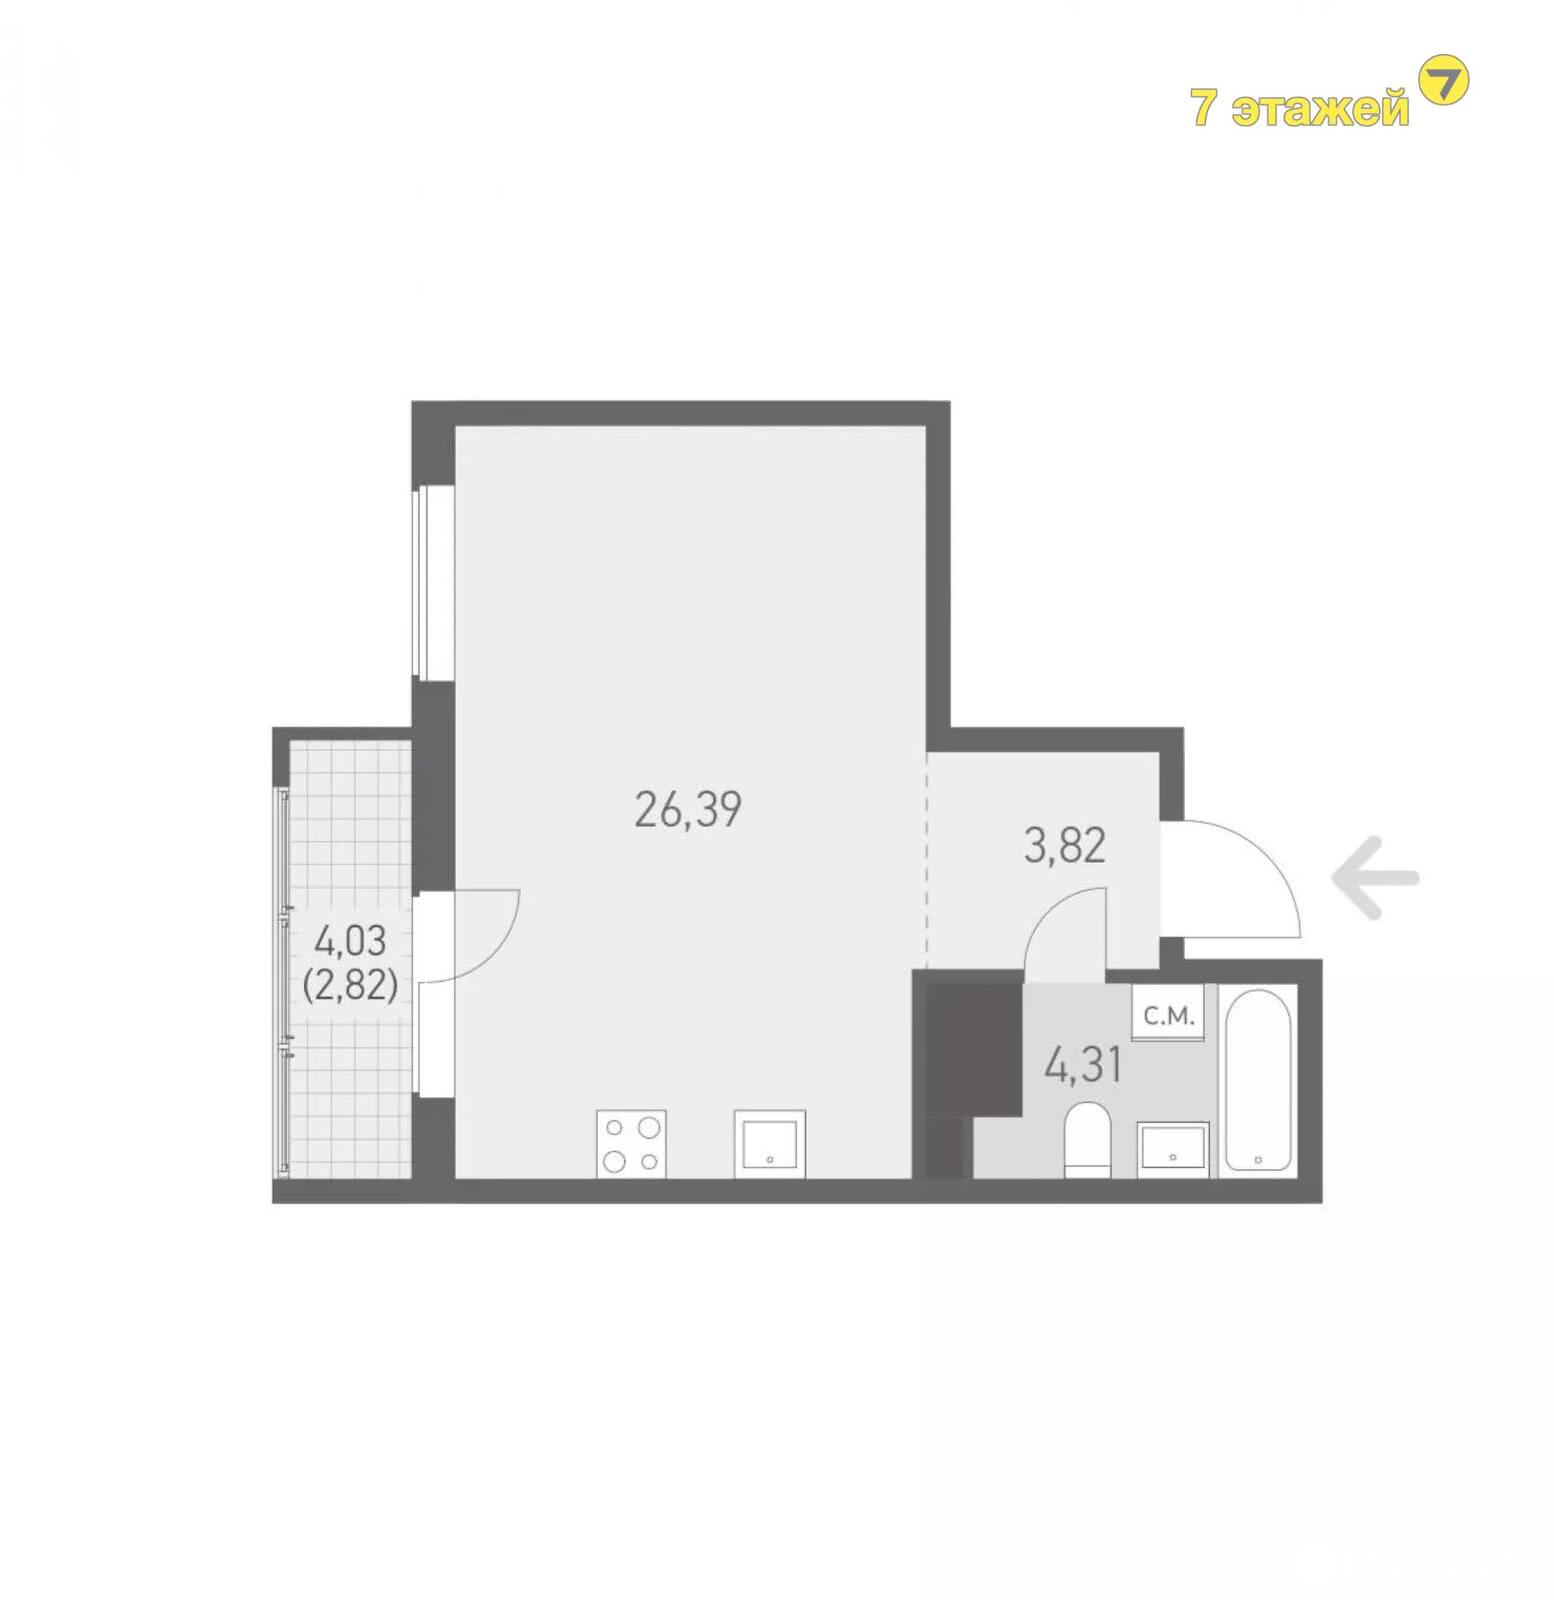 Стоимость продажи квартиры, Копище, ул. Николая Камова, д. 7.36